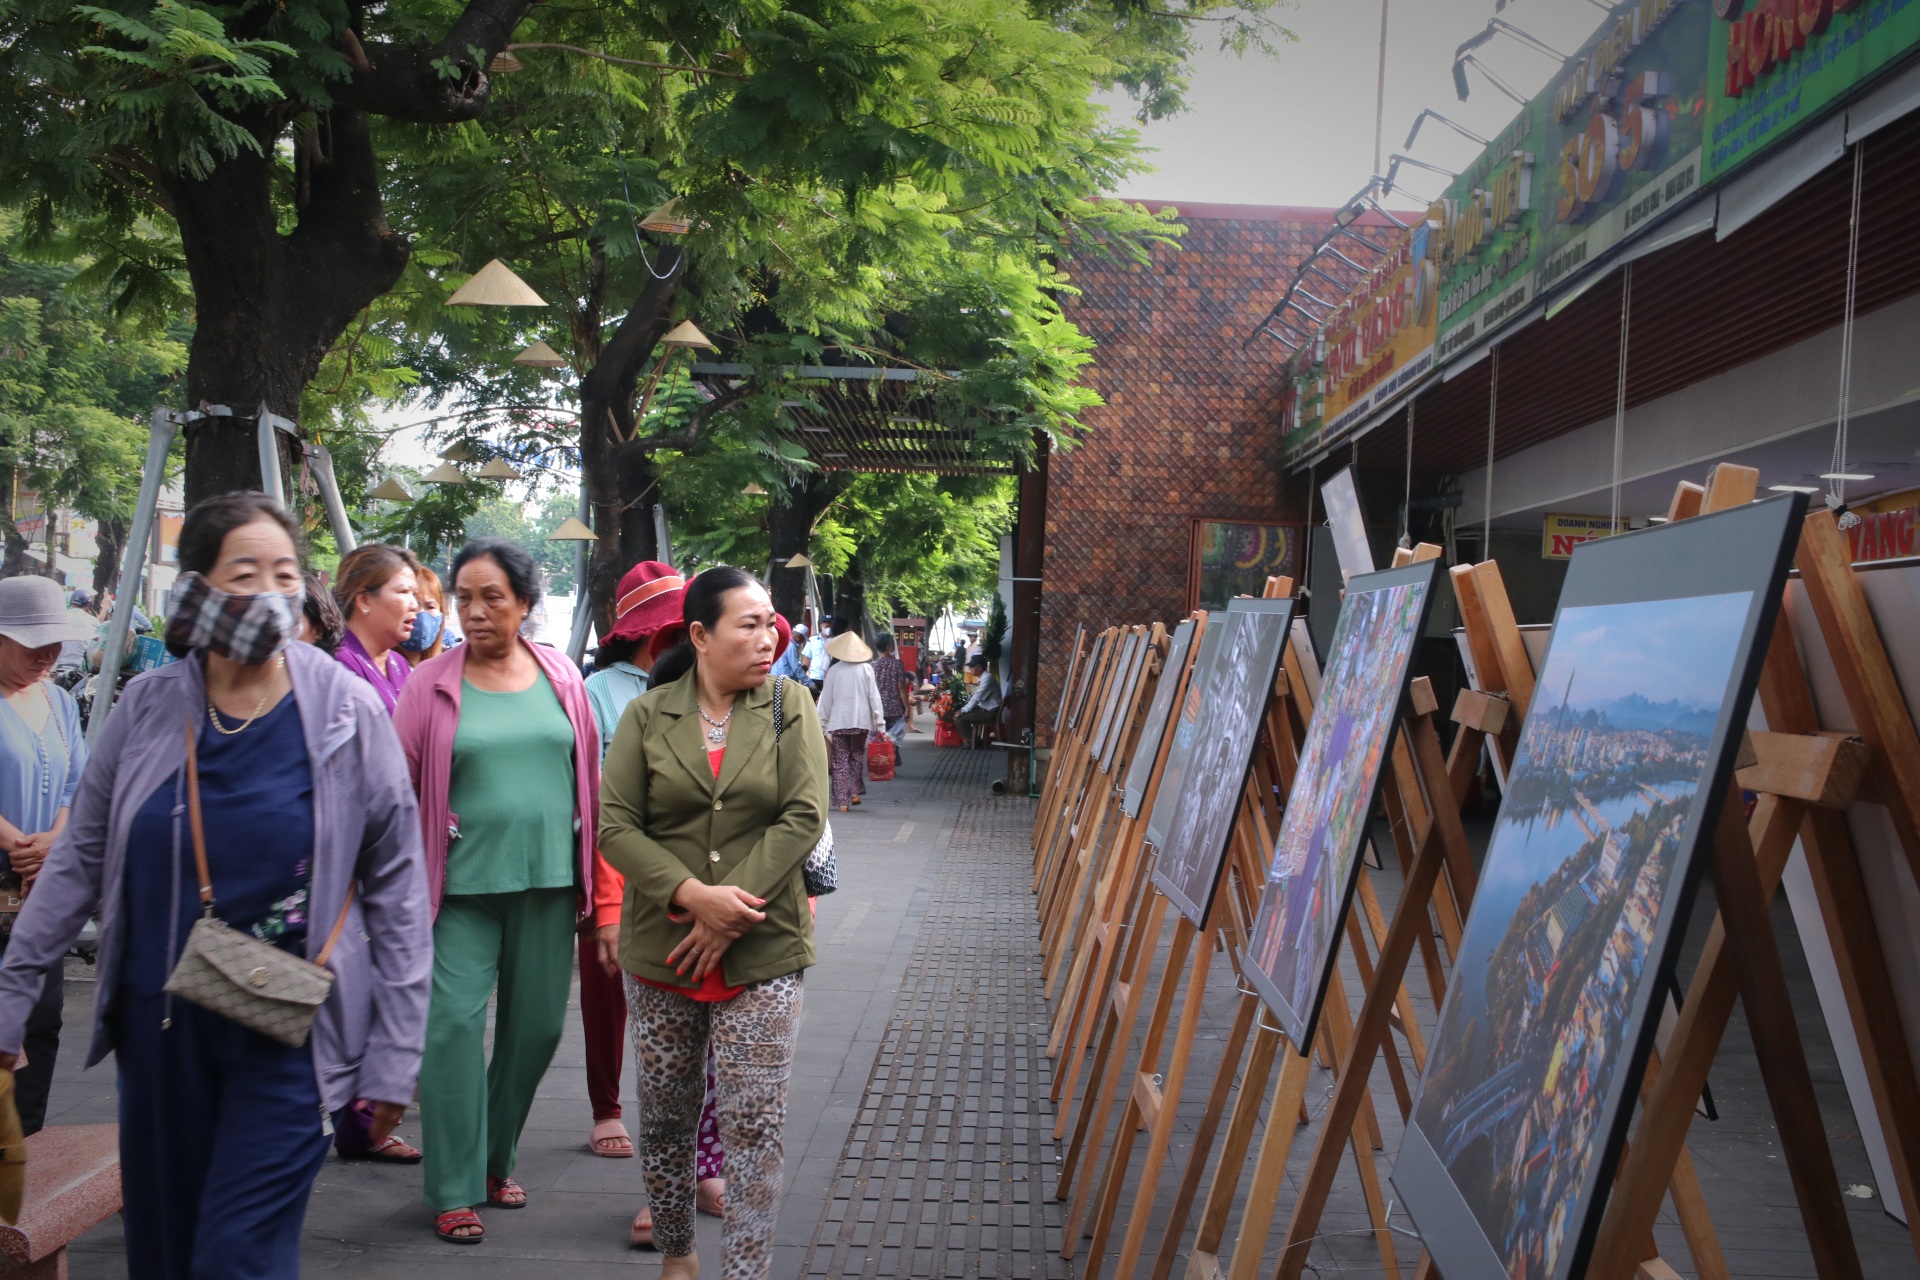 Đó là không khí sôi động của chợ Đông Ba thường ngày. Nay có thêm triễn lãm với những bức ảnh vô cùng đẹp mắt và ấn tượng, khiến du khách thích thú, hết lời khen ngợi. 